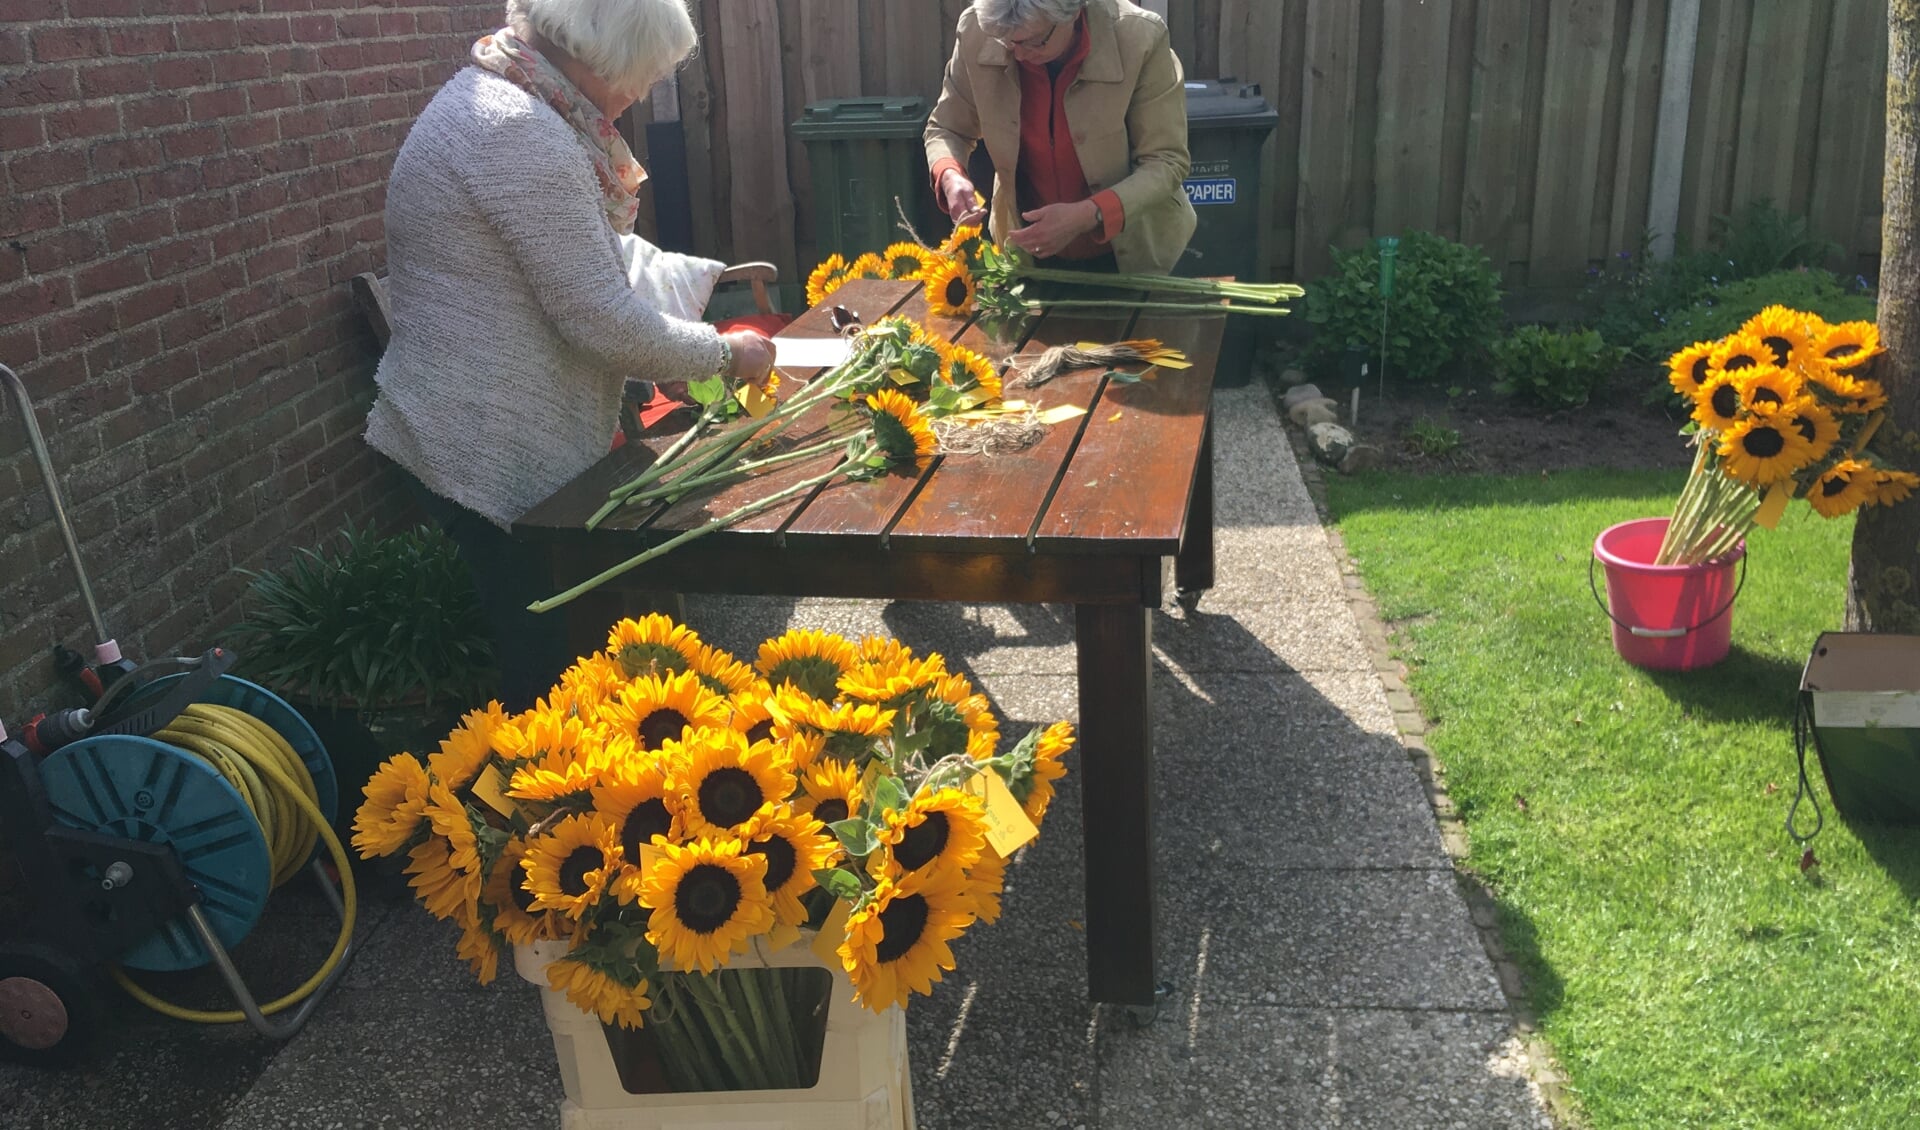 Kaartjes met de wens ‘Goed gaon’ worden aan de zonnebloemen geknoopt. Foto: Trudi van der Weijden